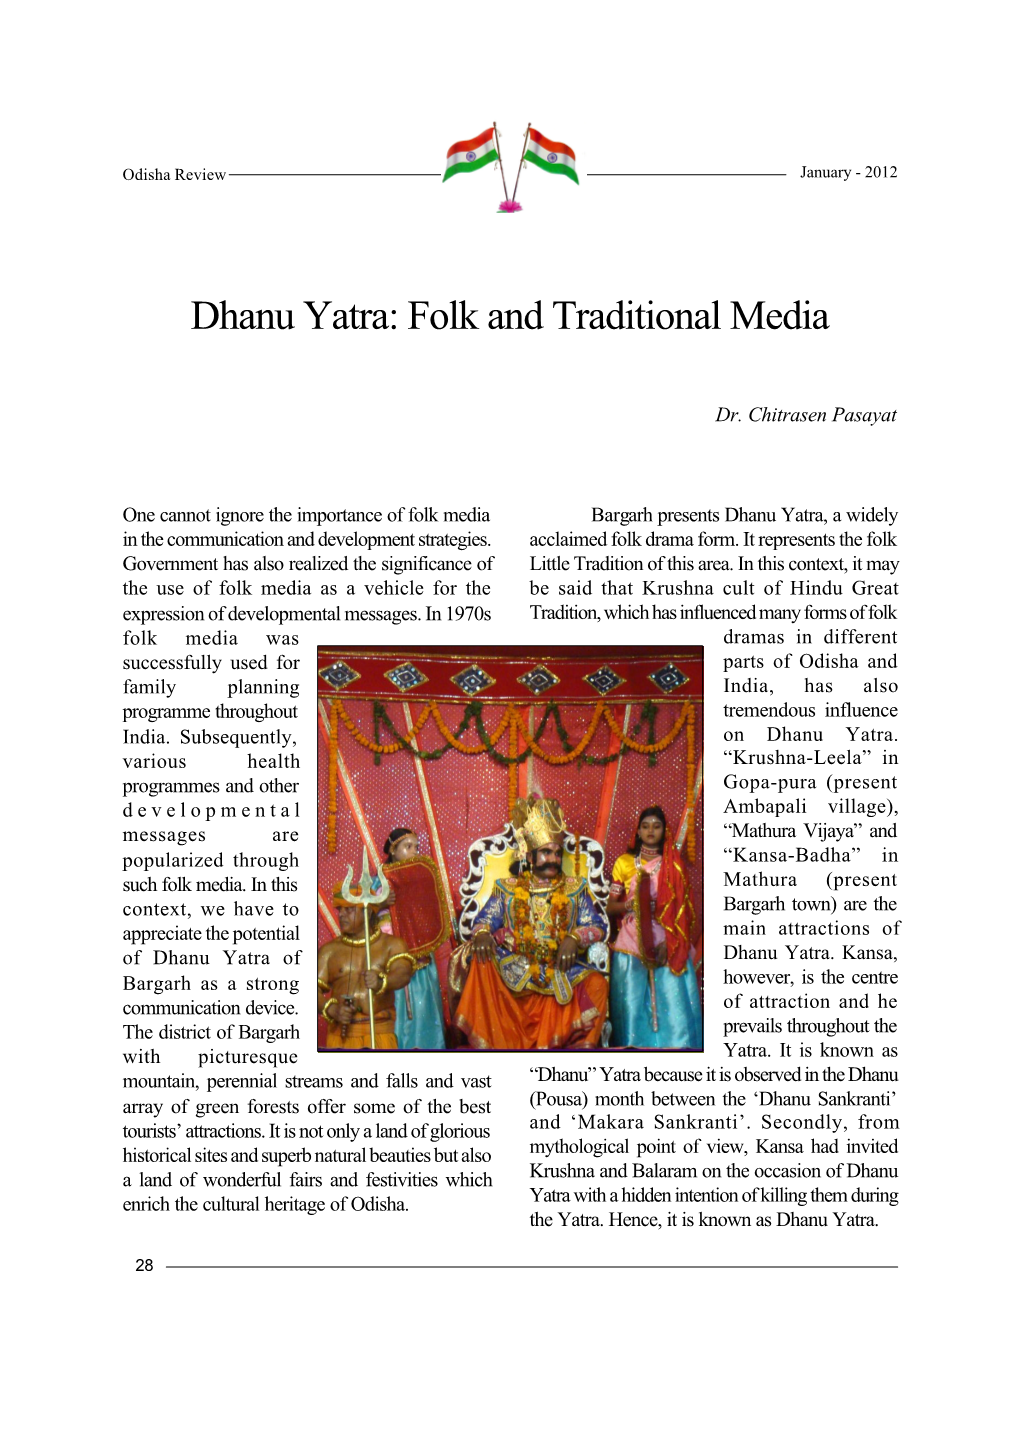 Dhanu Yatra: Folk and Traditional Media